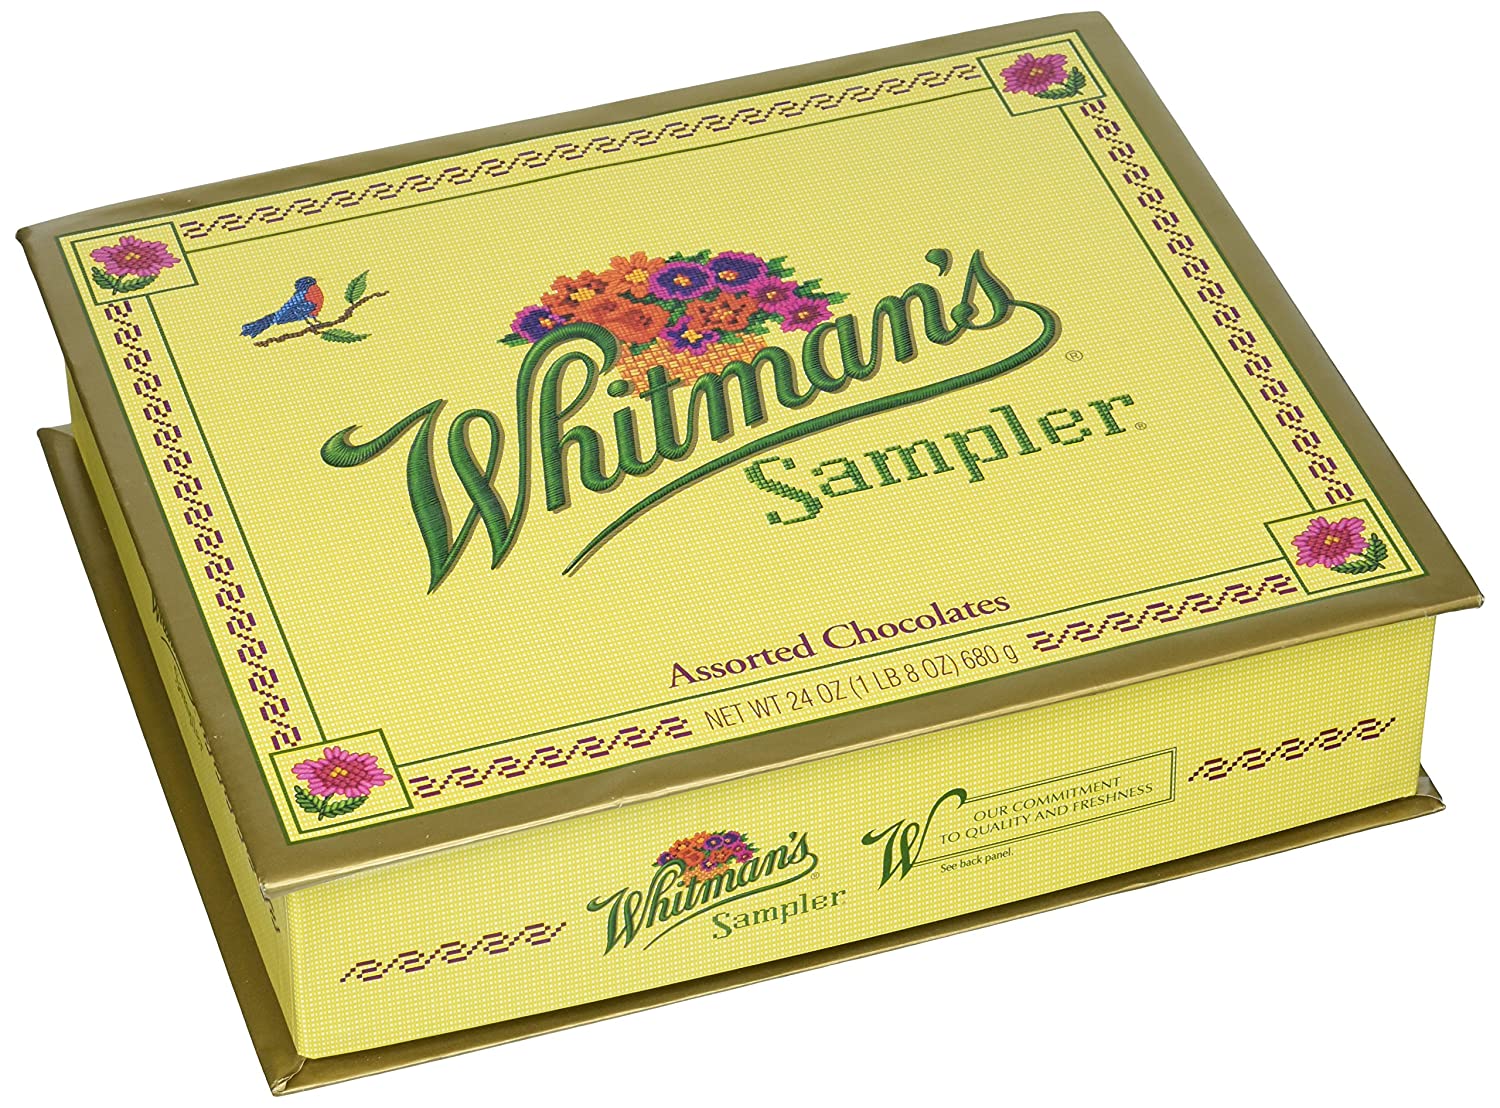 5. Whitman's Assorted Chocolate Box